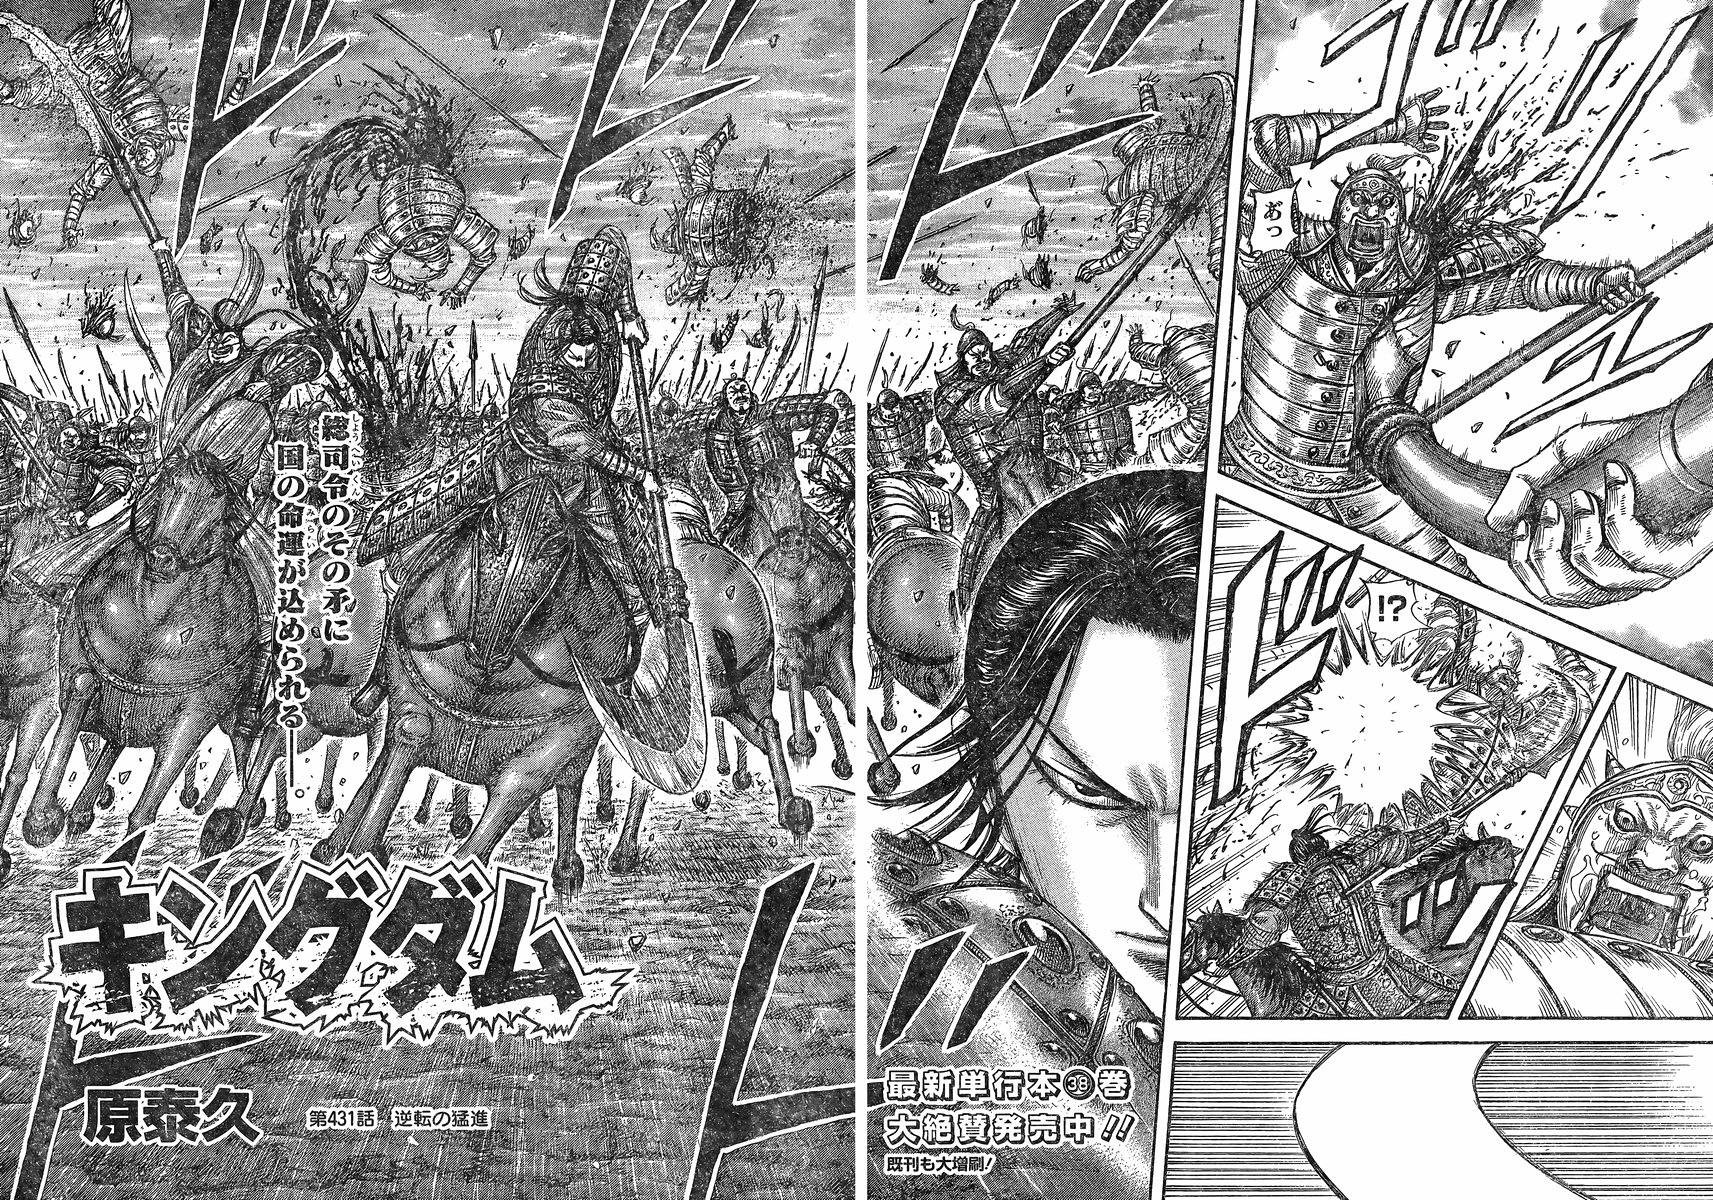 Kingdom Chapter 431 Page 2 Raw Sen Manga